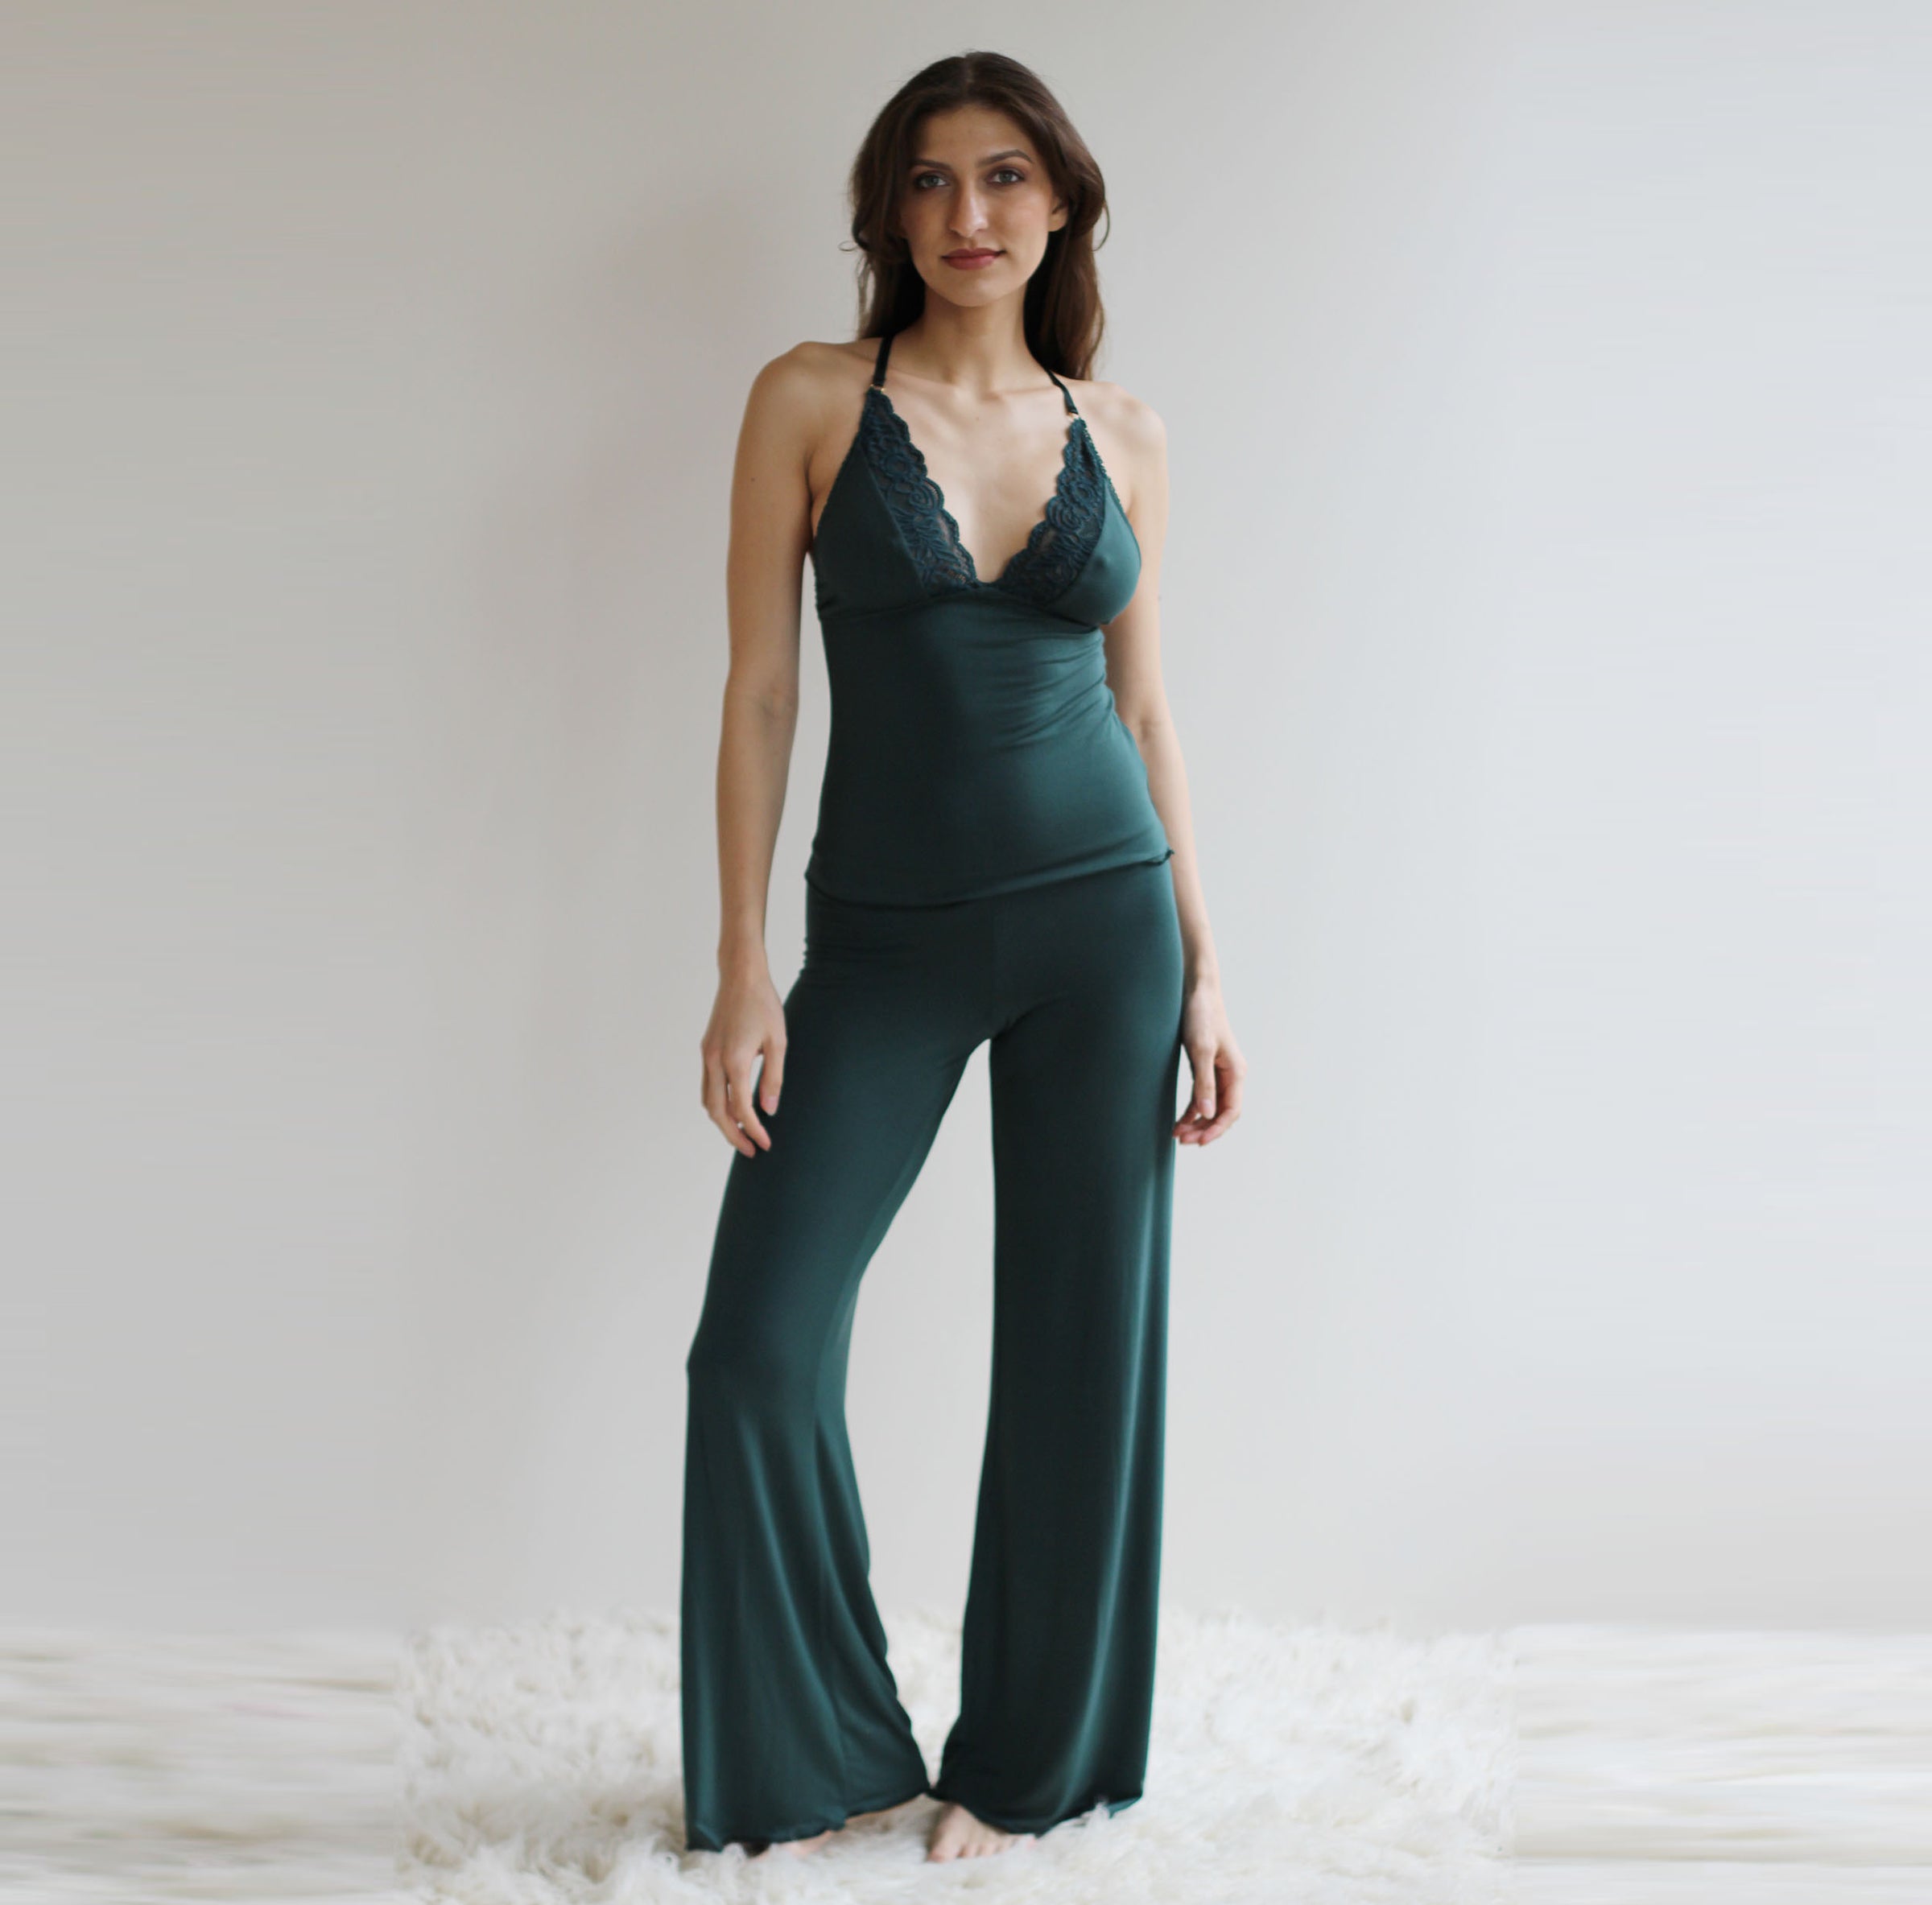 Mesh Panties with Lace Trim – Sandmaiden Sleepwear